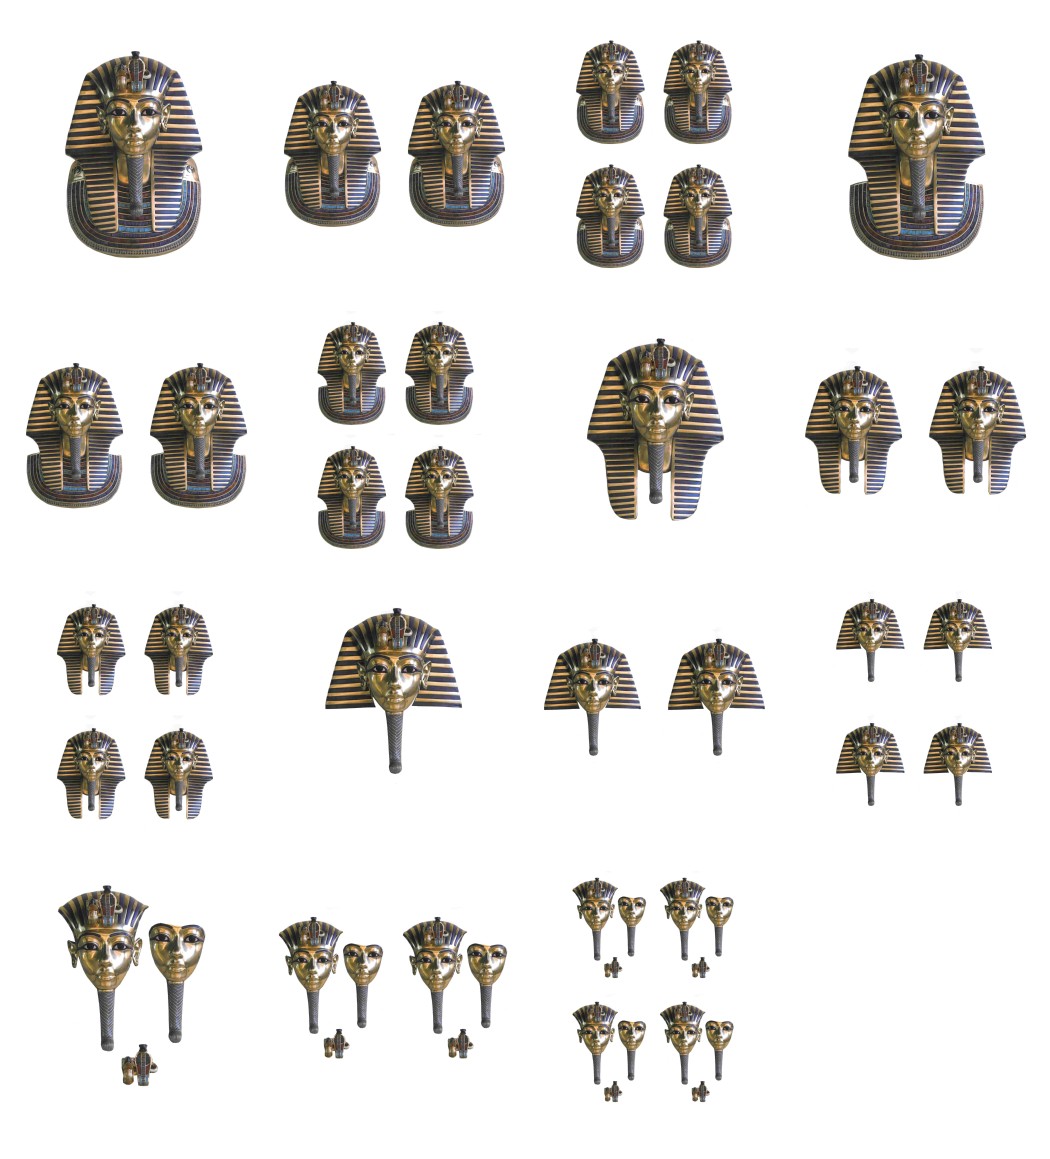 Tutankhamin 3D Set - 15 Pages to DOWNLOAD